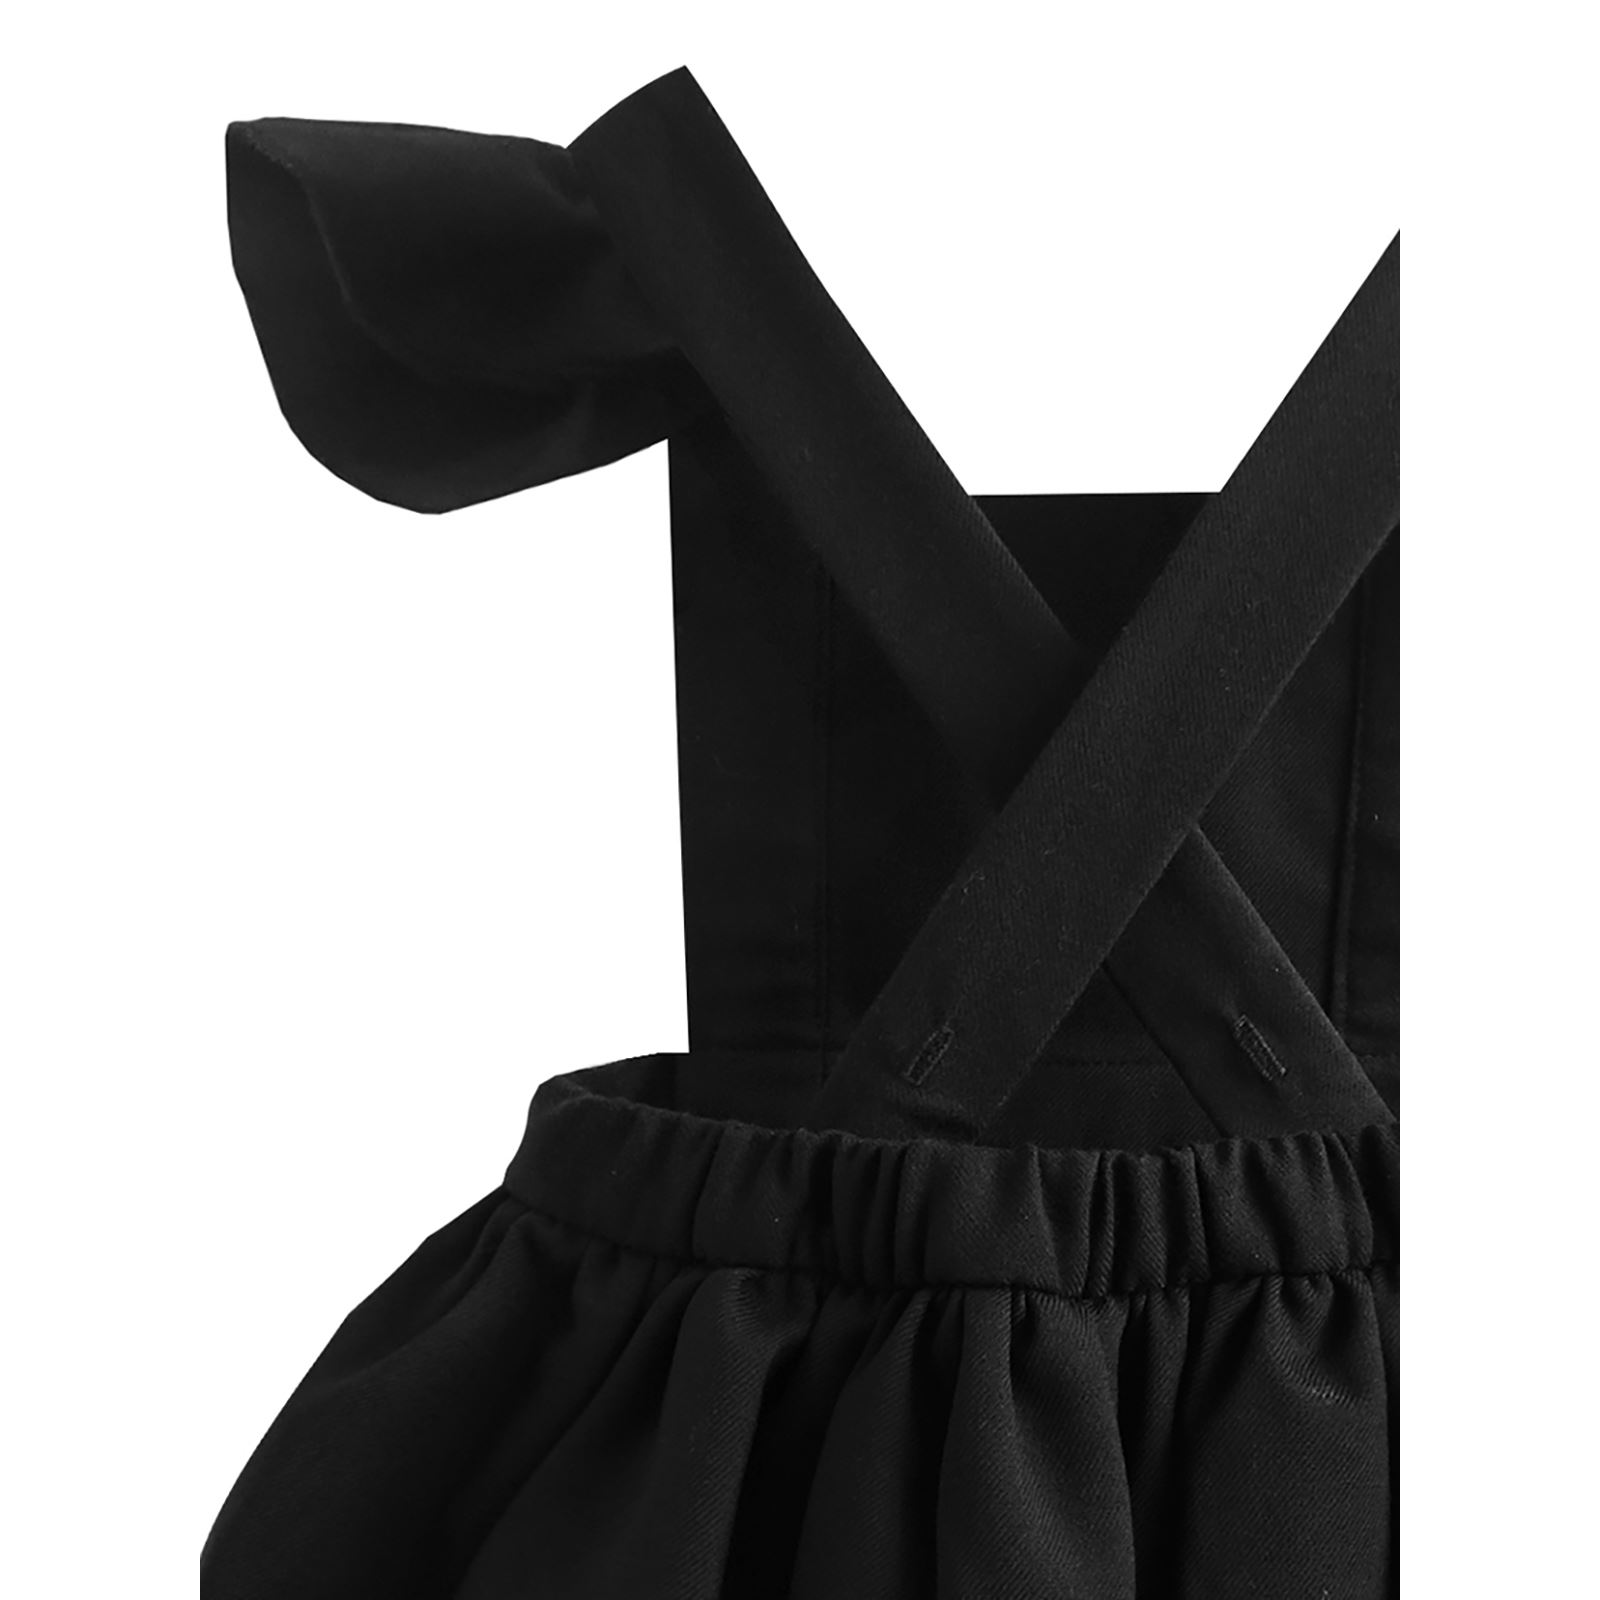 Shecco Babba Kız Çocuk Kolları Fırfırlı Tütü Elbise Taç Takım 1-5 Yaş Siyah